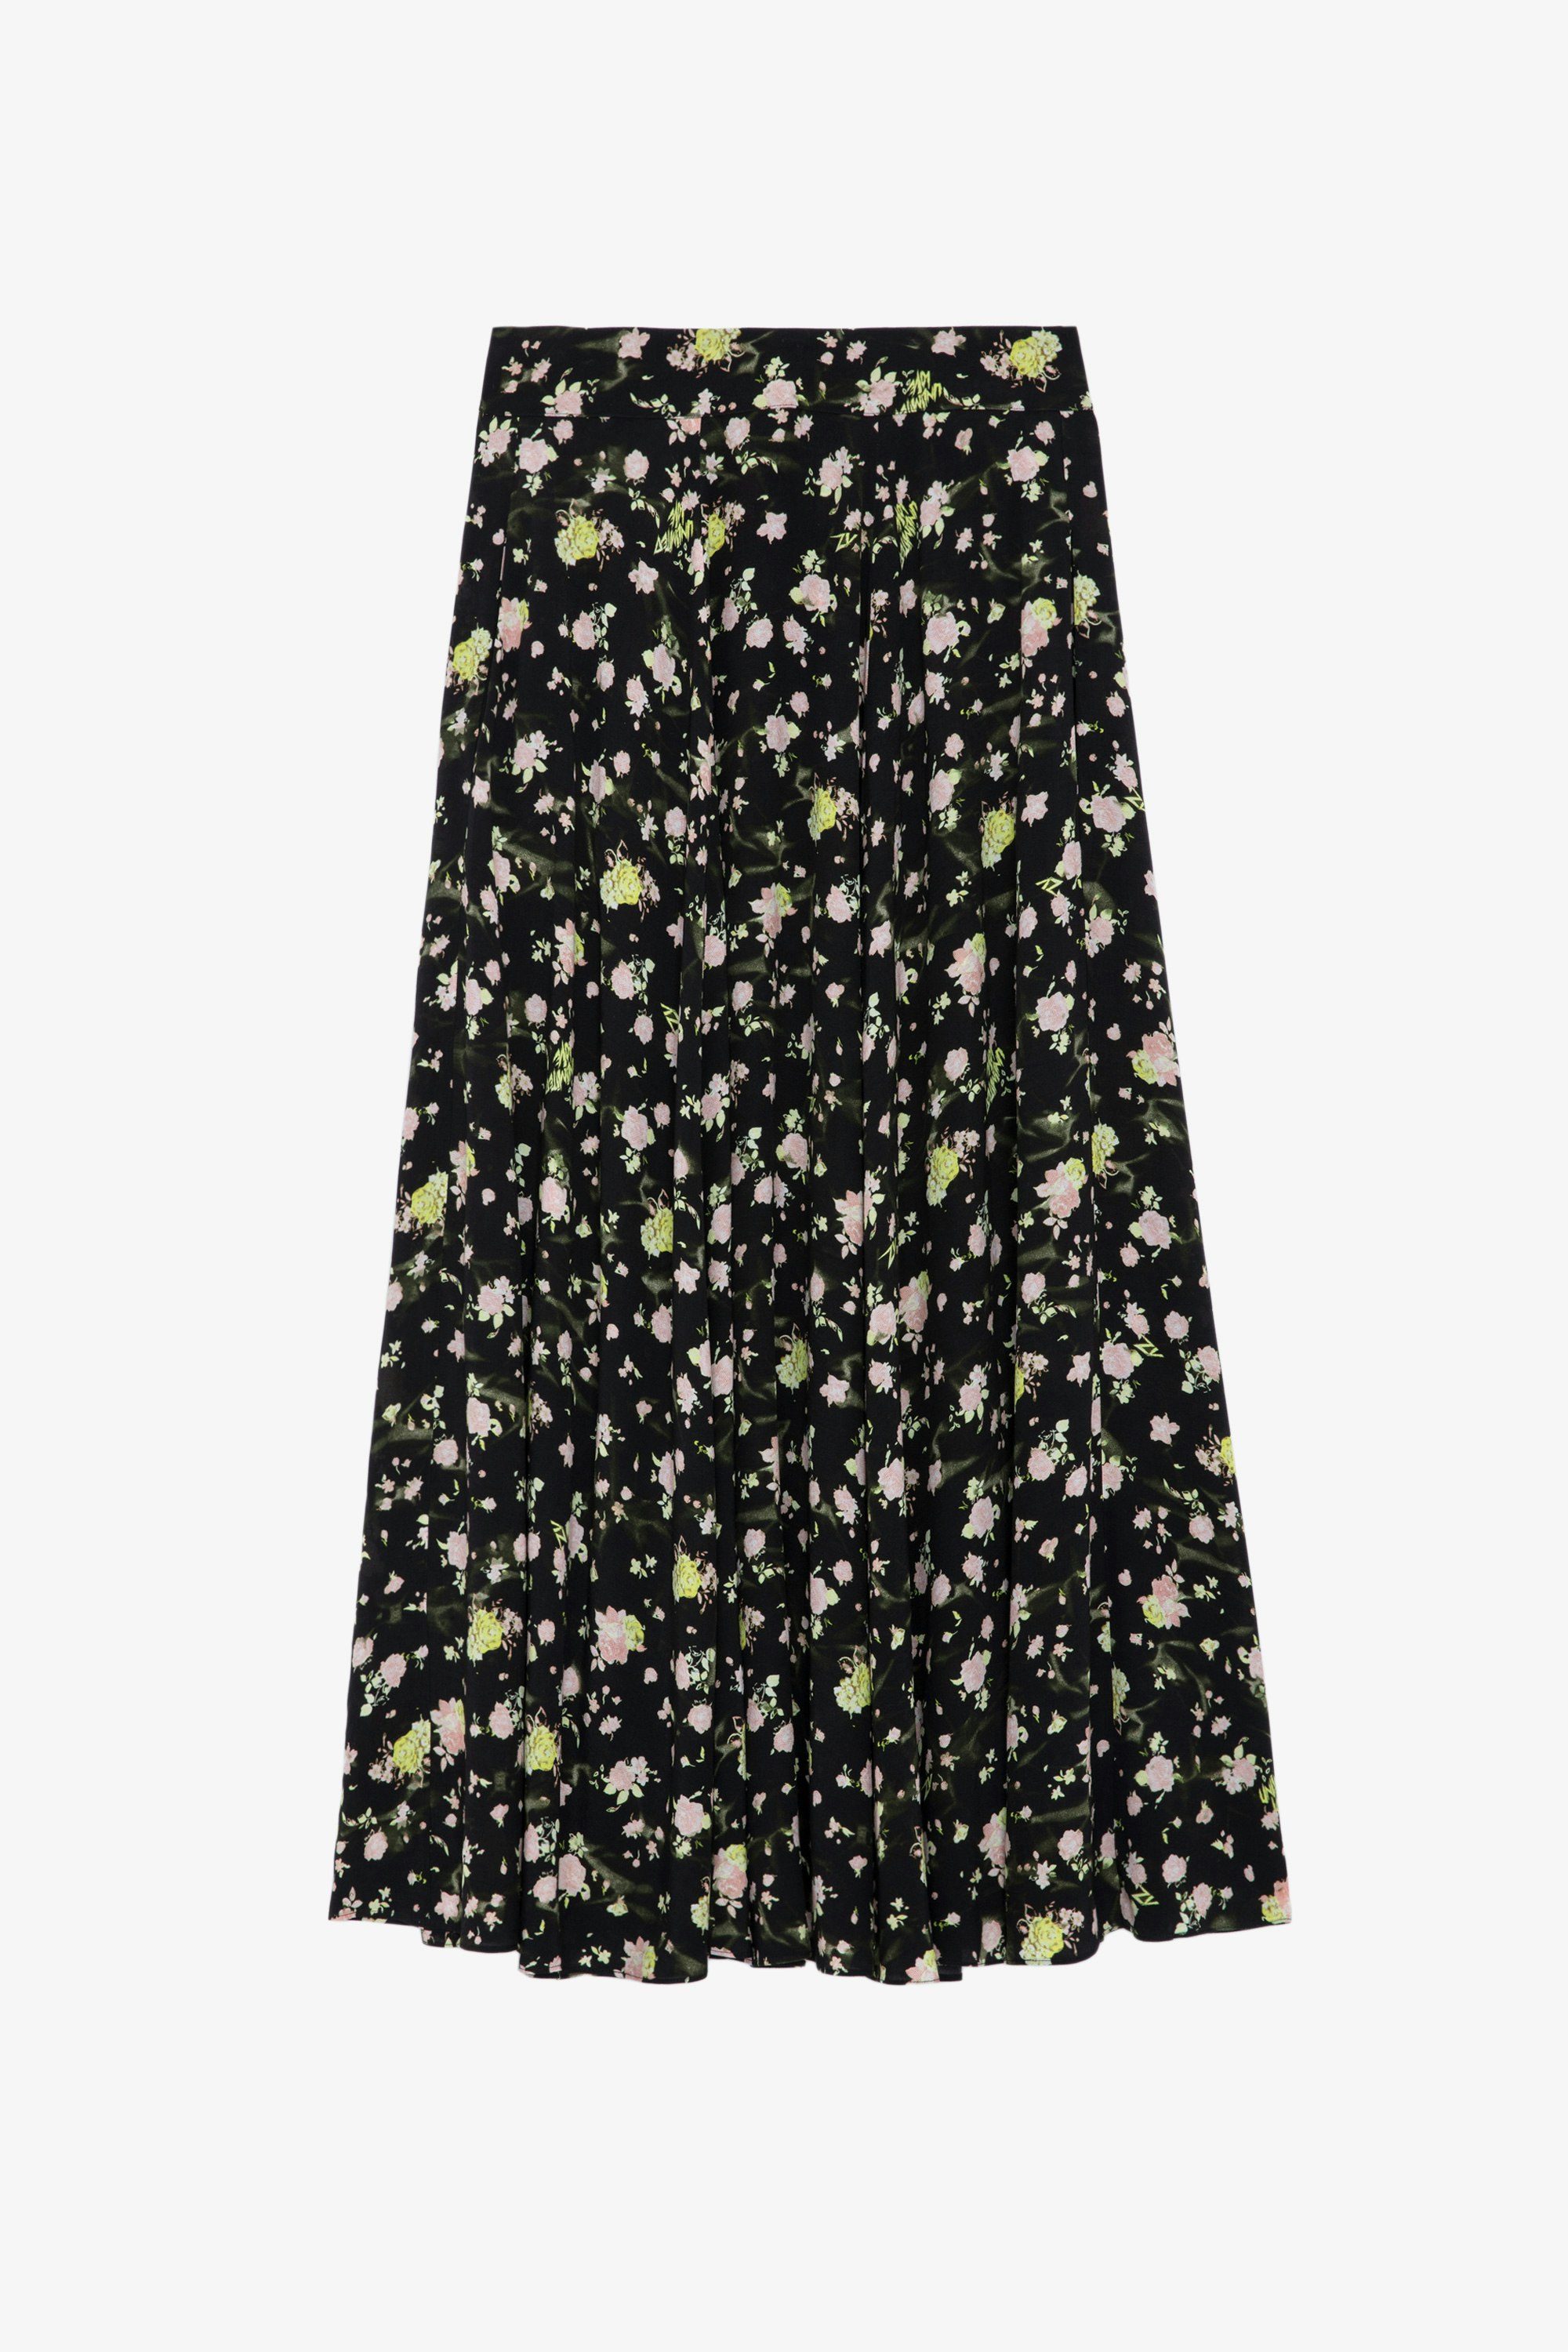 Joyo Soft Crinkle Roses Skirt - Women’s long black floral-print skirt.